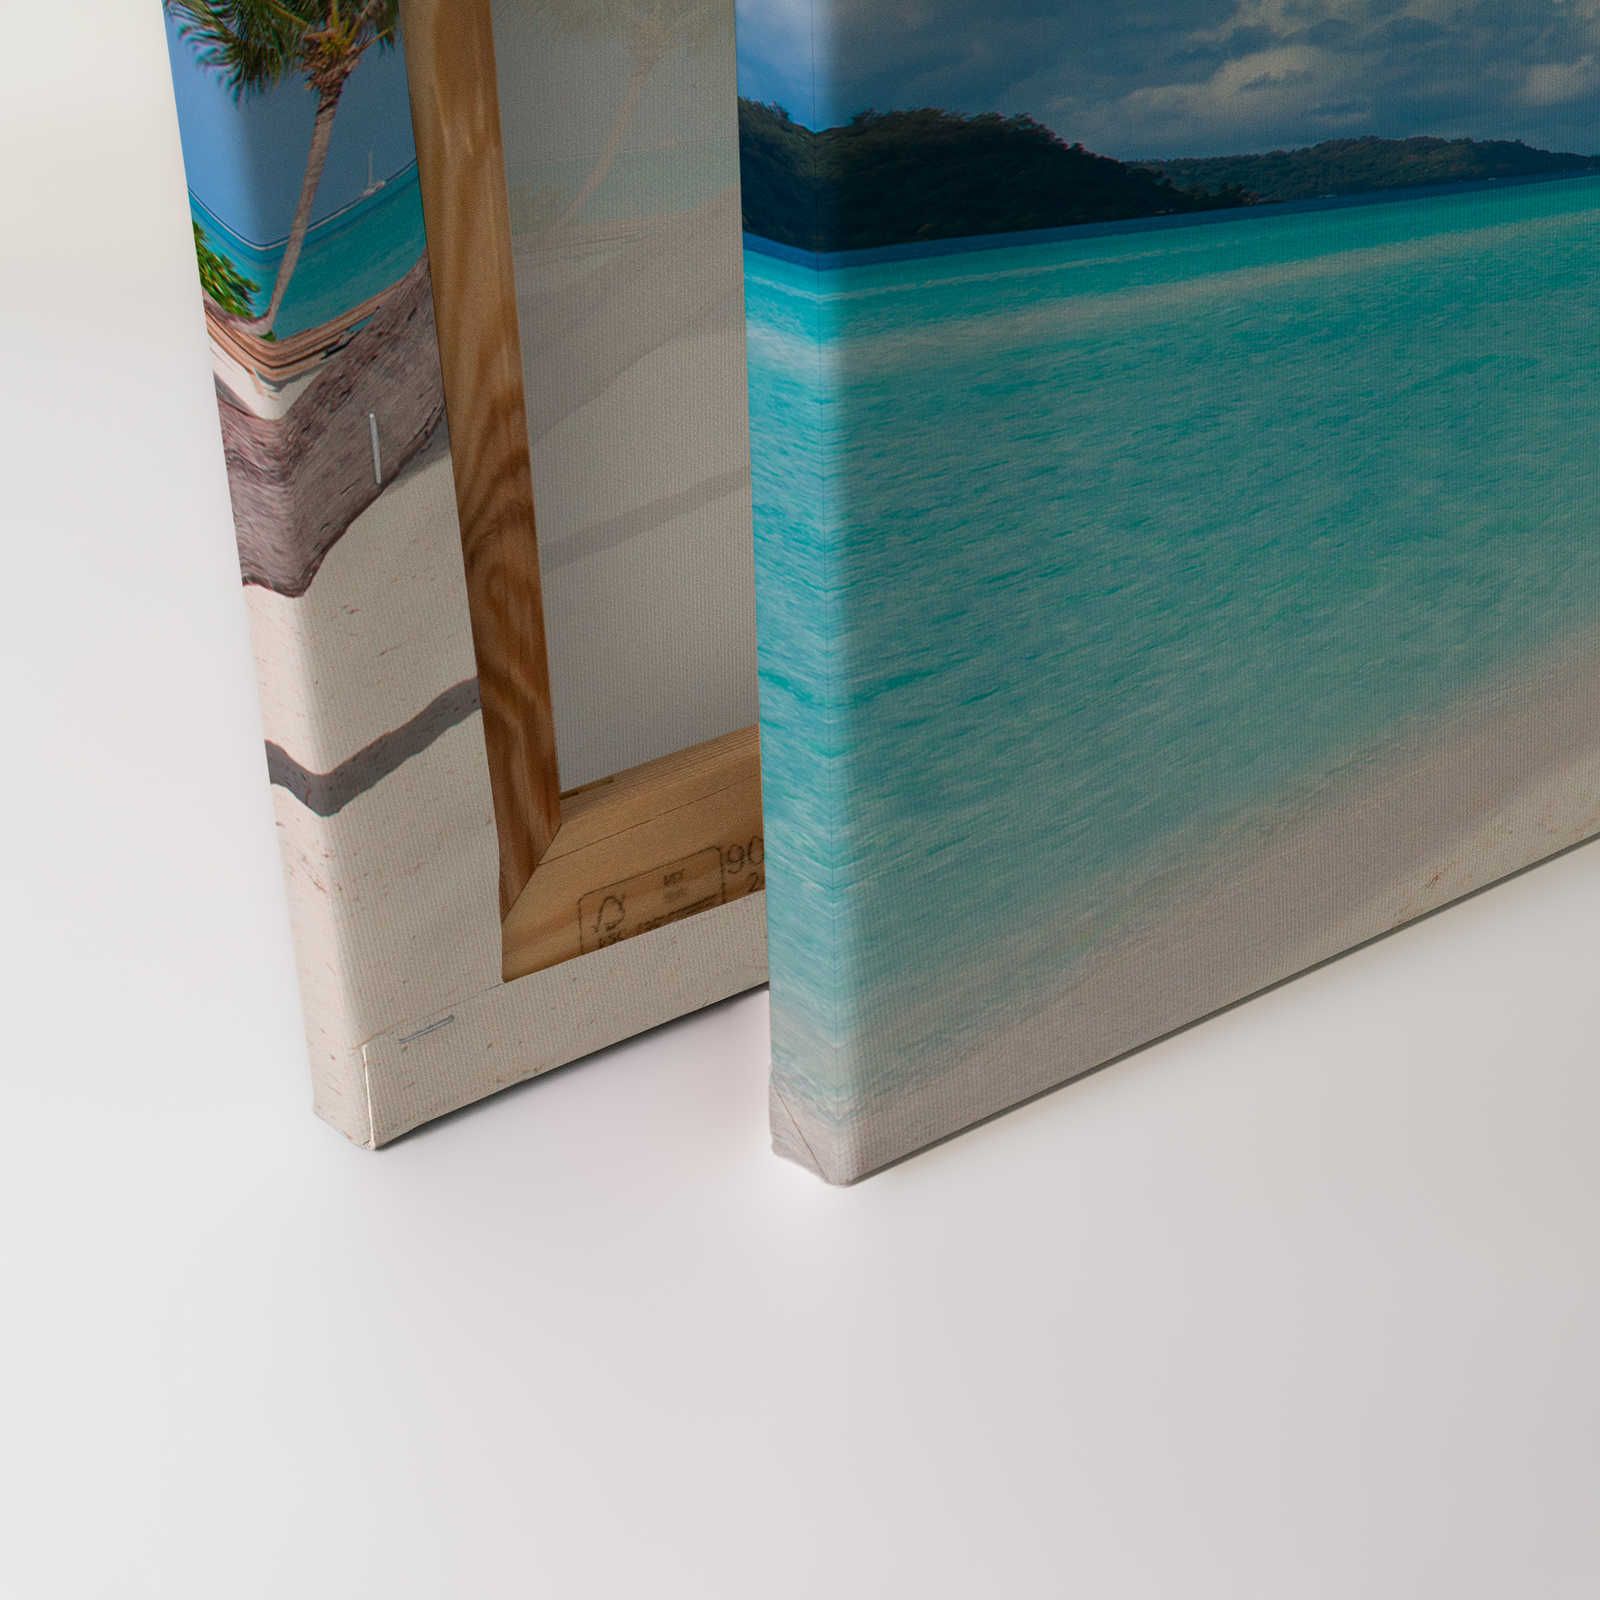             Strand met palmboom canvas schilderij en helder water - 1.20 m x 0.80 m
        